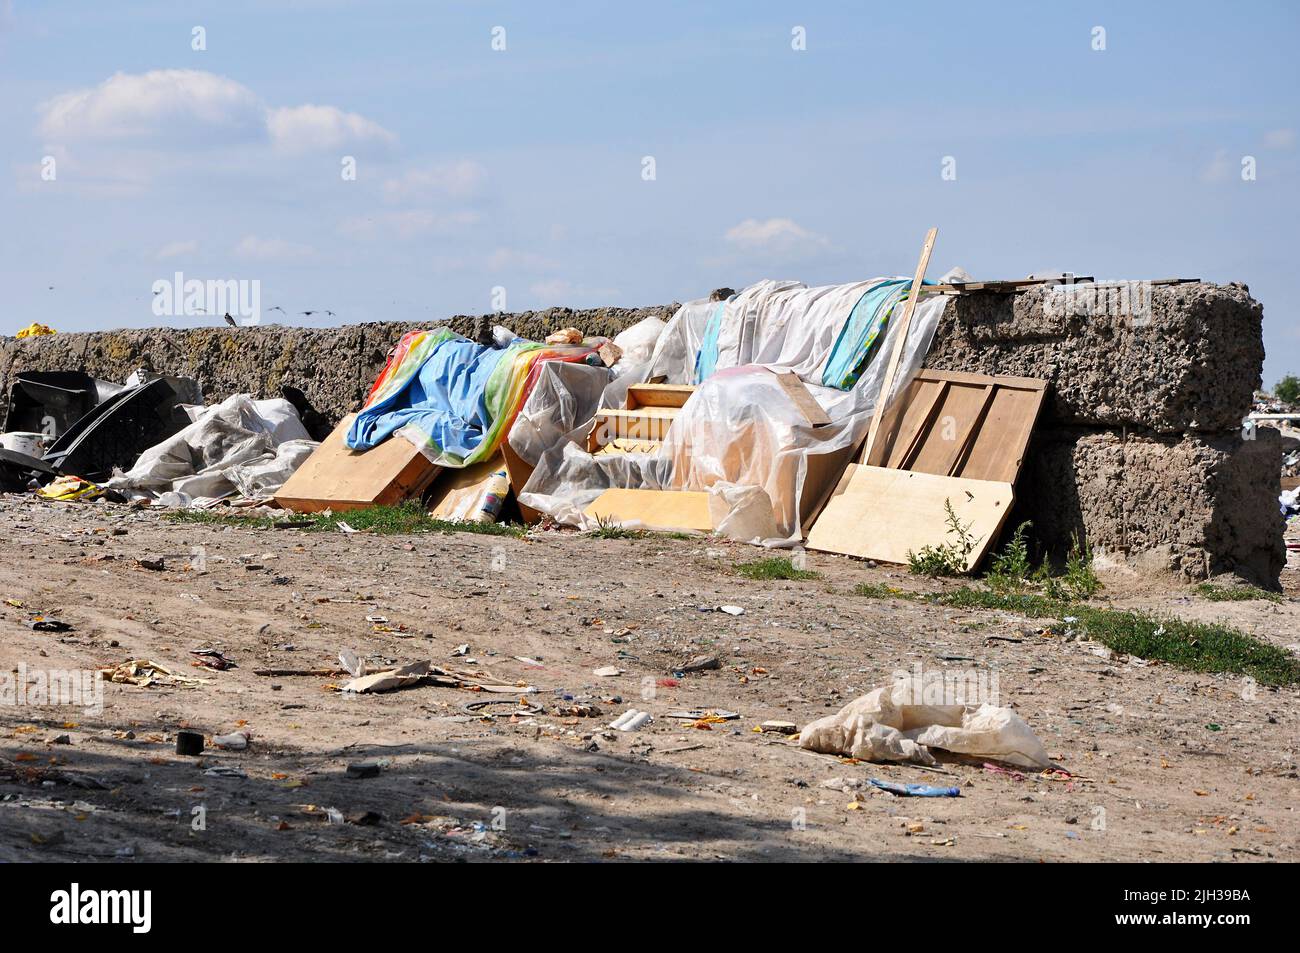 Mobili antichi e tela di scarto in una discarica comunale vicino a muro in rovina in giorno di sole Foto Stock